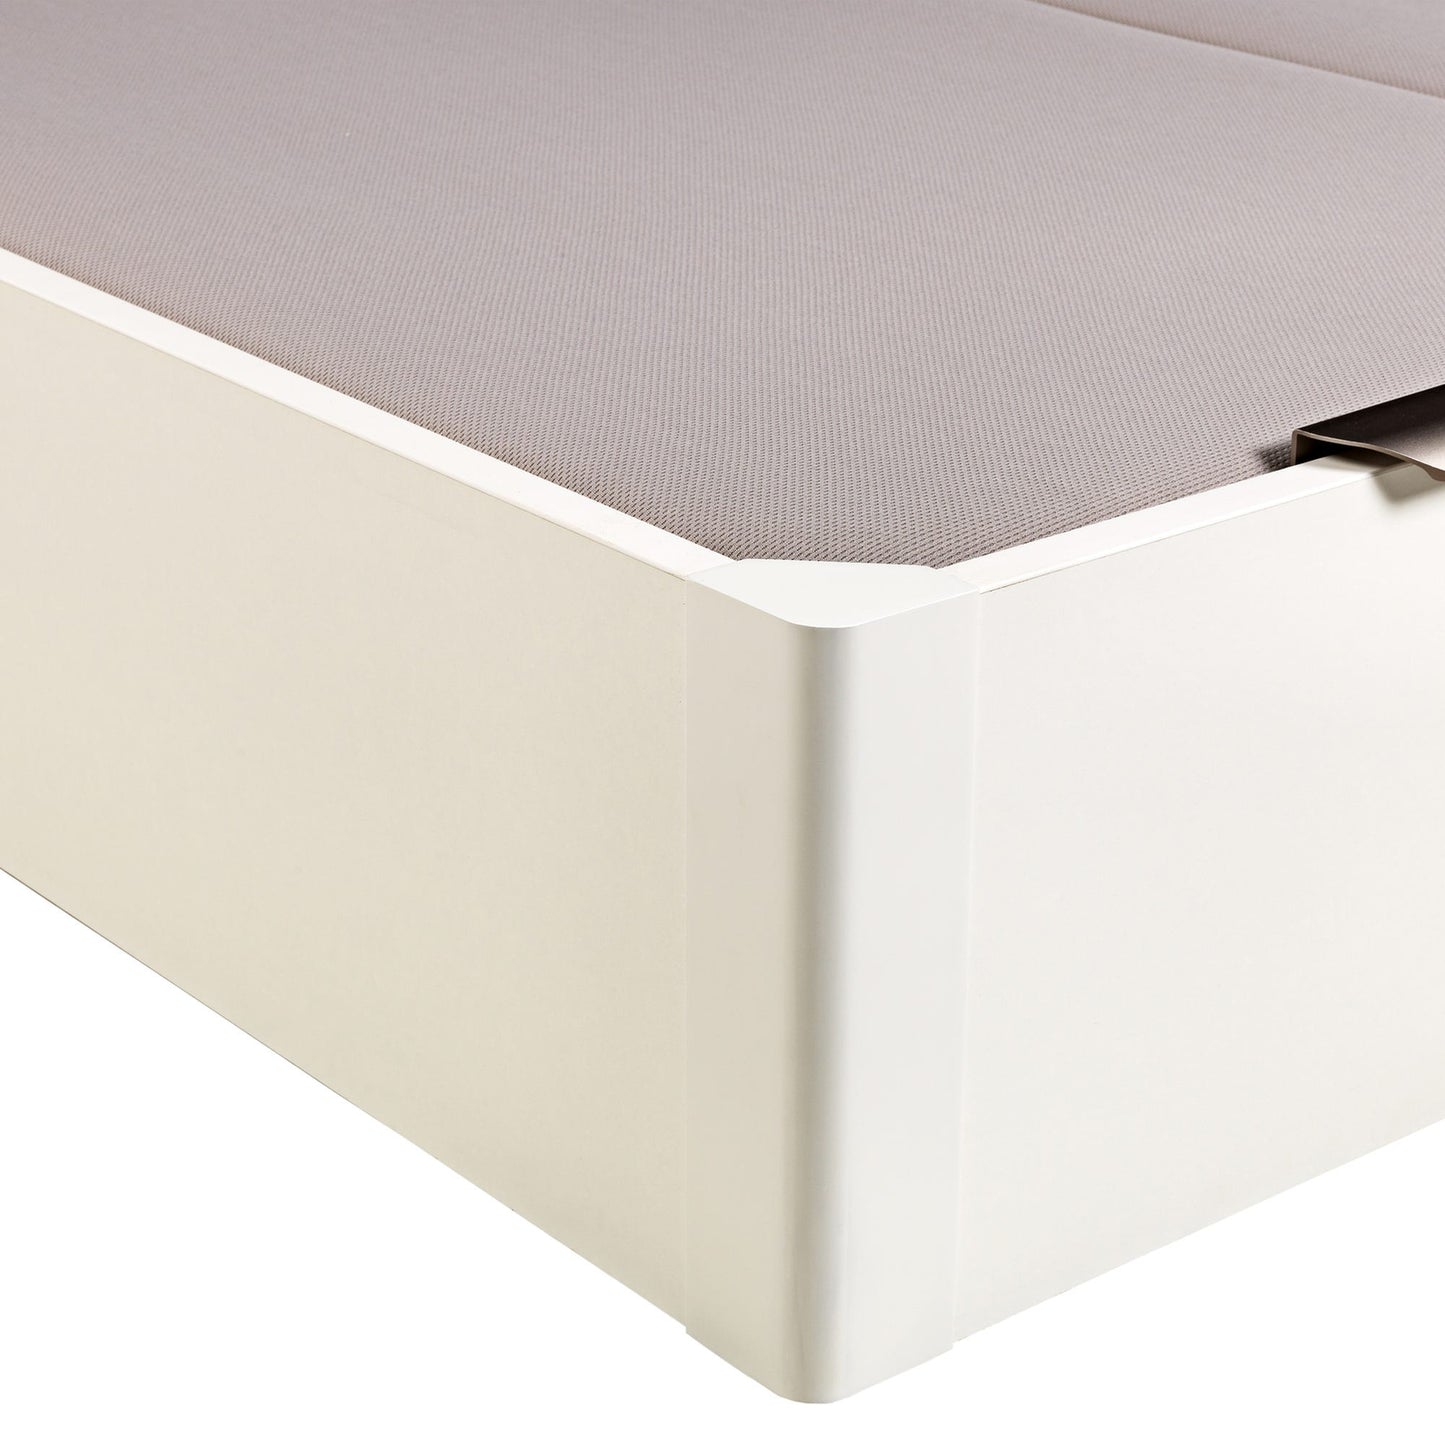 Canapé abatible de madera de tapa doble de color blanco - DESIGN - 150x190